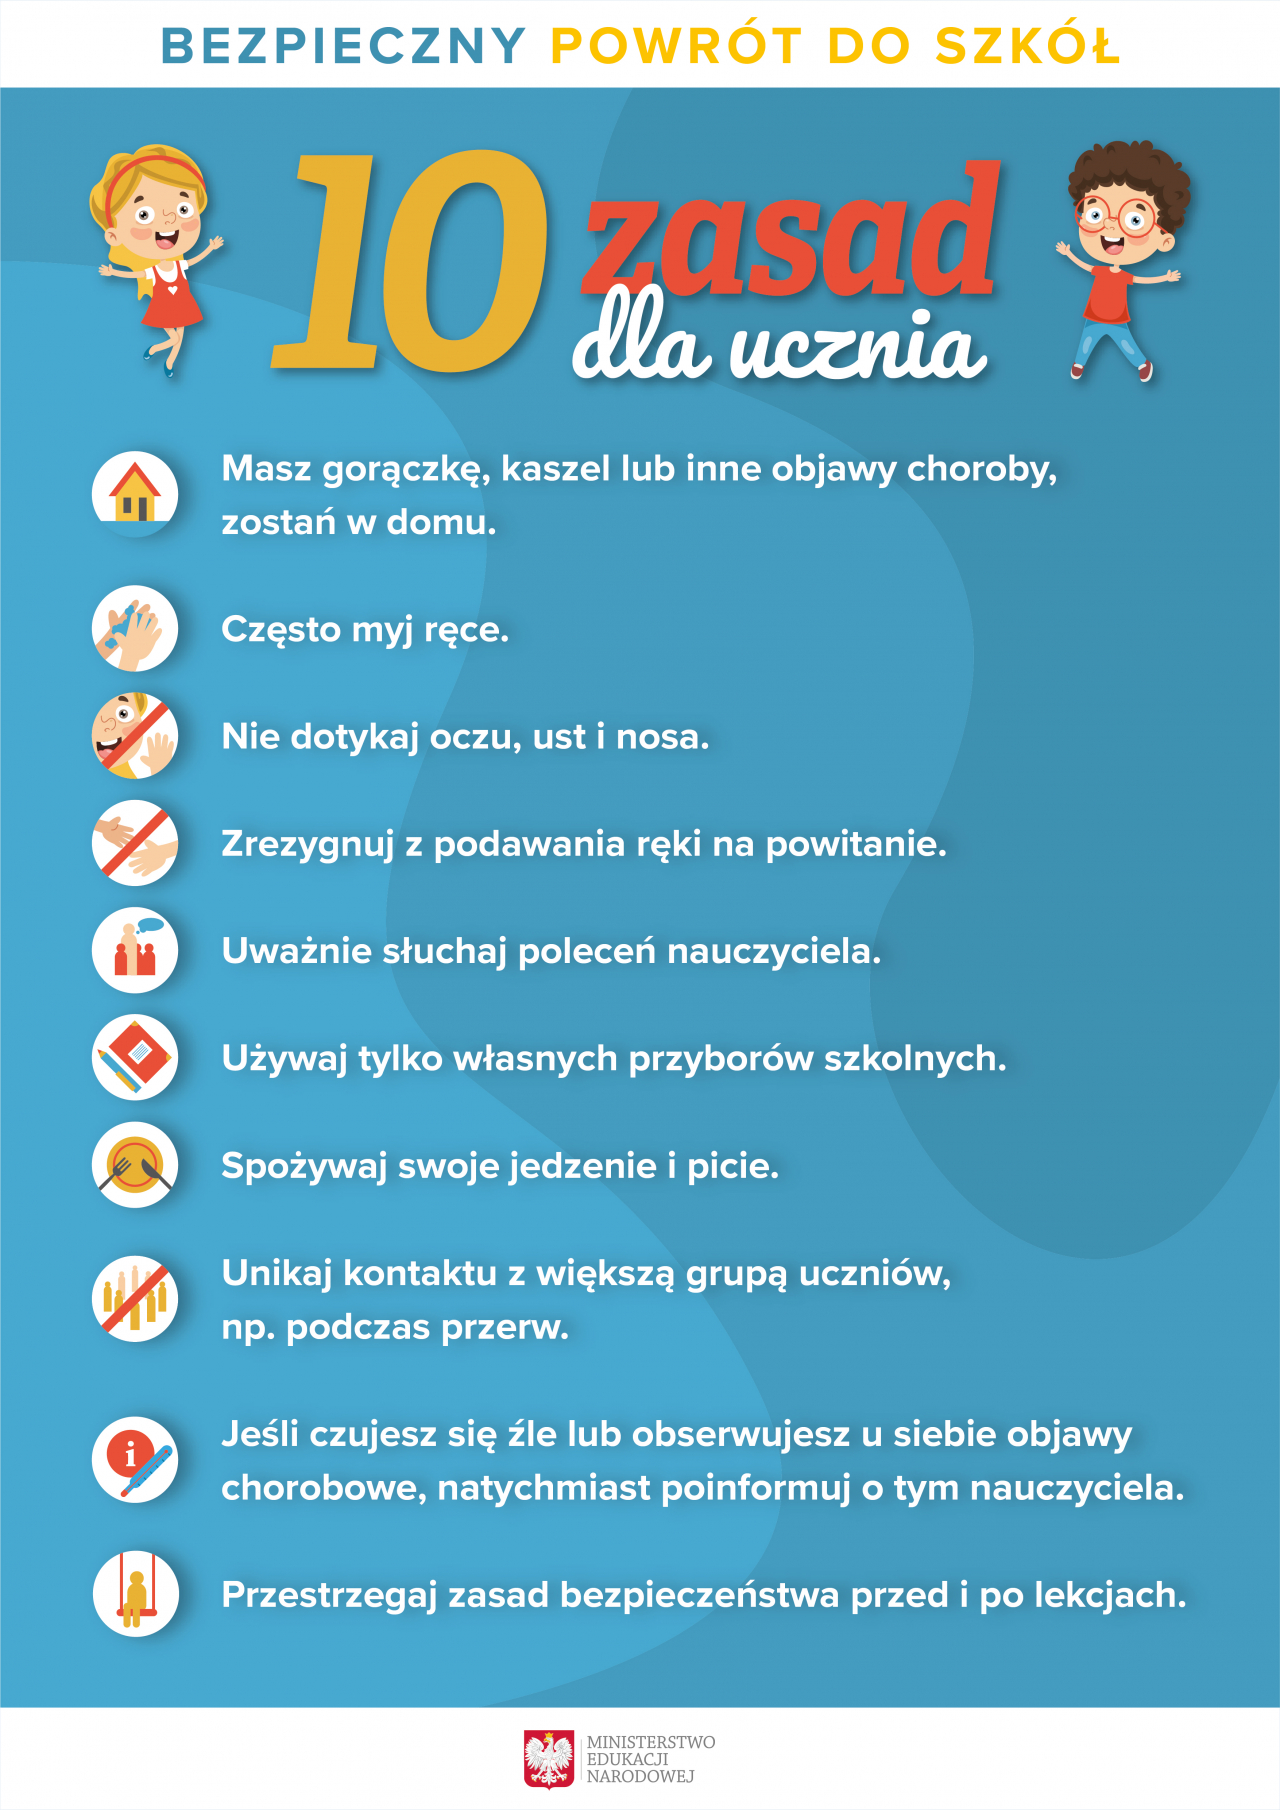 Plakat - bezpieczny powrót do szkoły, 10 zasad dla ucznia.